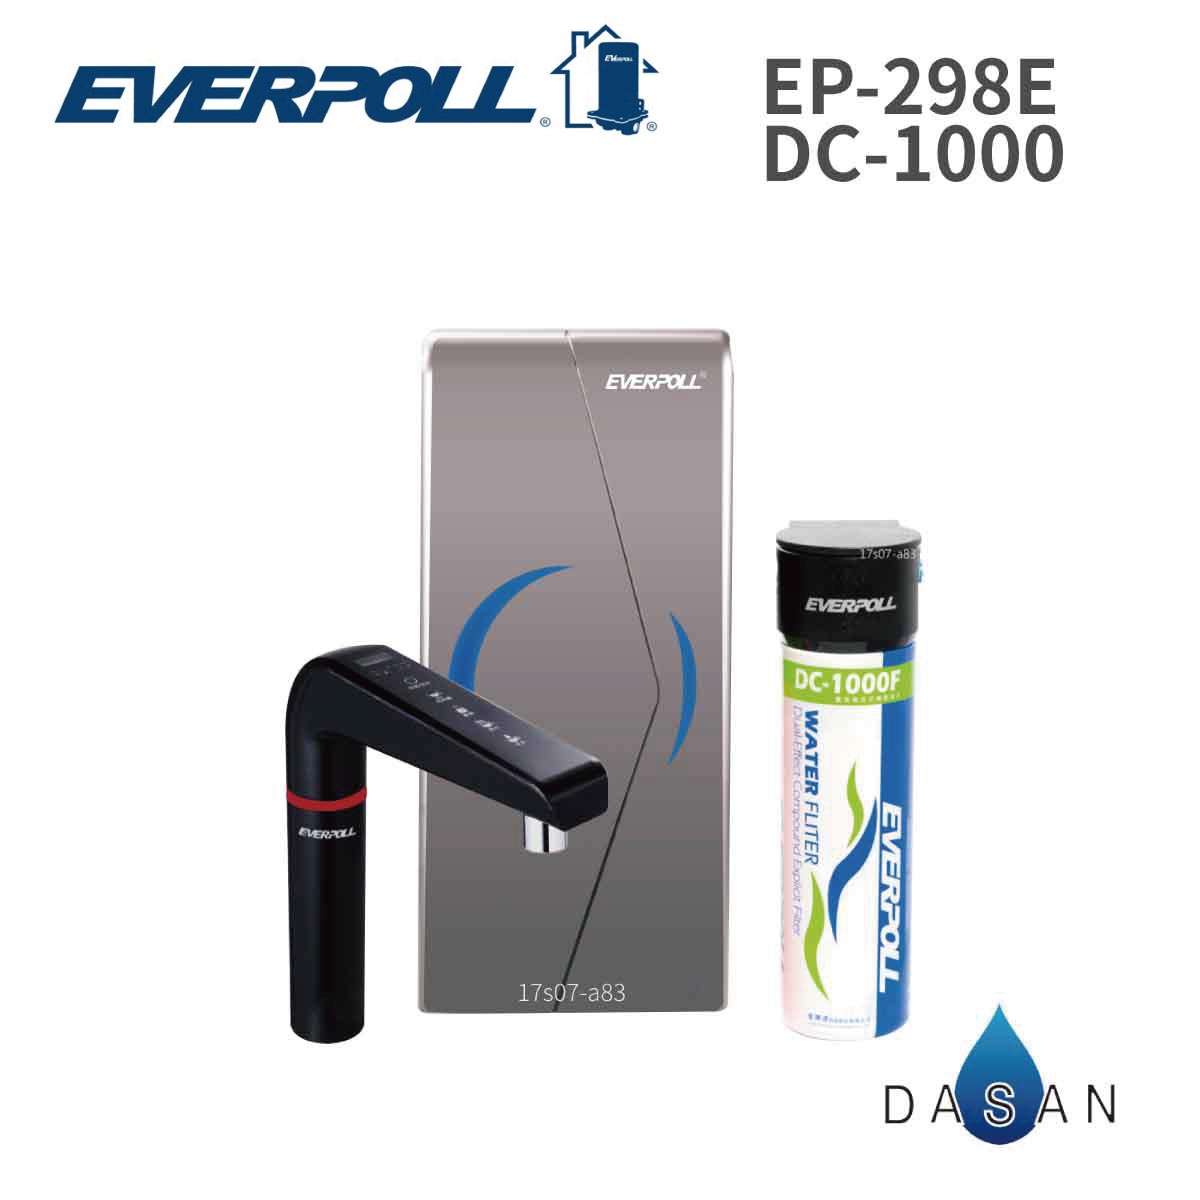 【EVERPOLL】廚下型雙溫UV觸控 飲水機 EVB-298E + 單道雙效淨水器 DC-1000